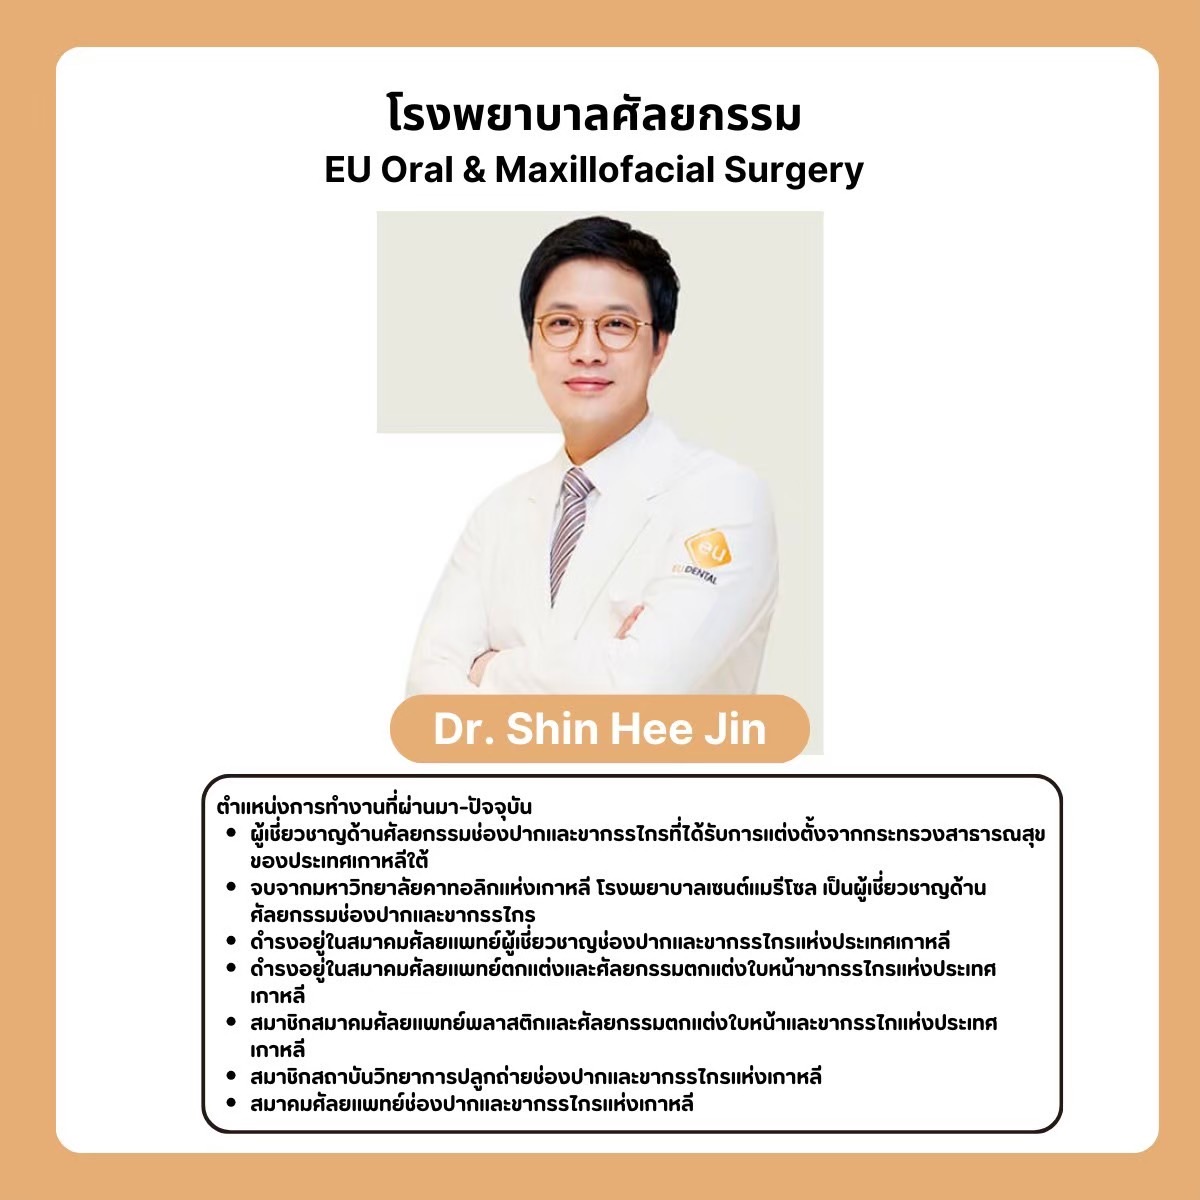 ประวัติ Dr Shin Hee Jin